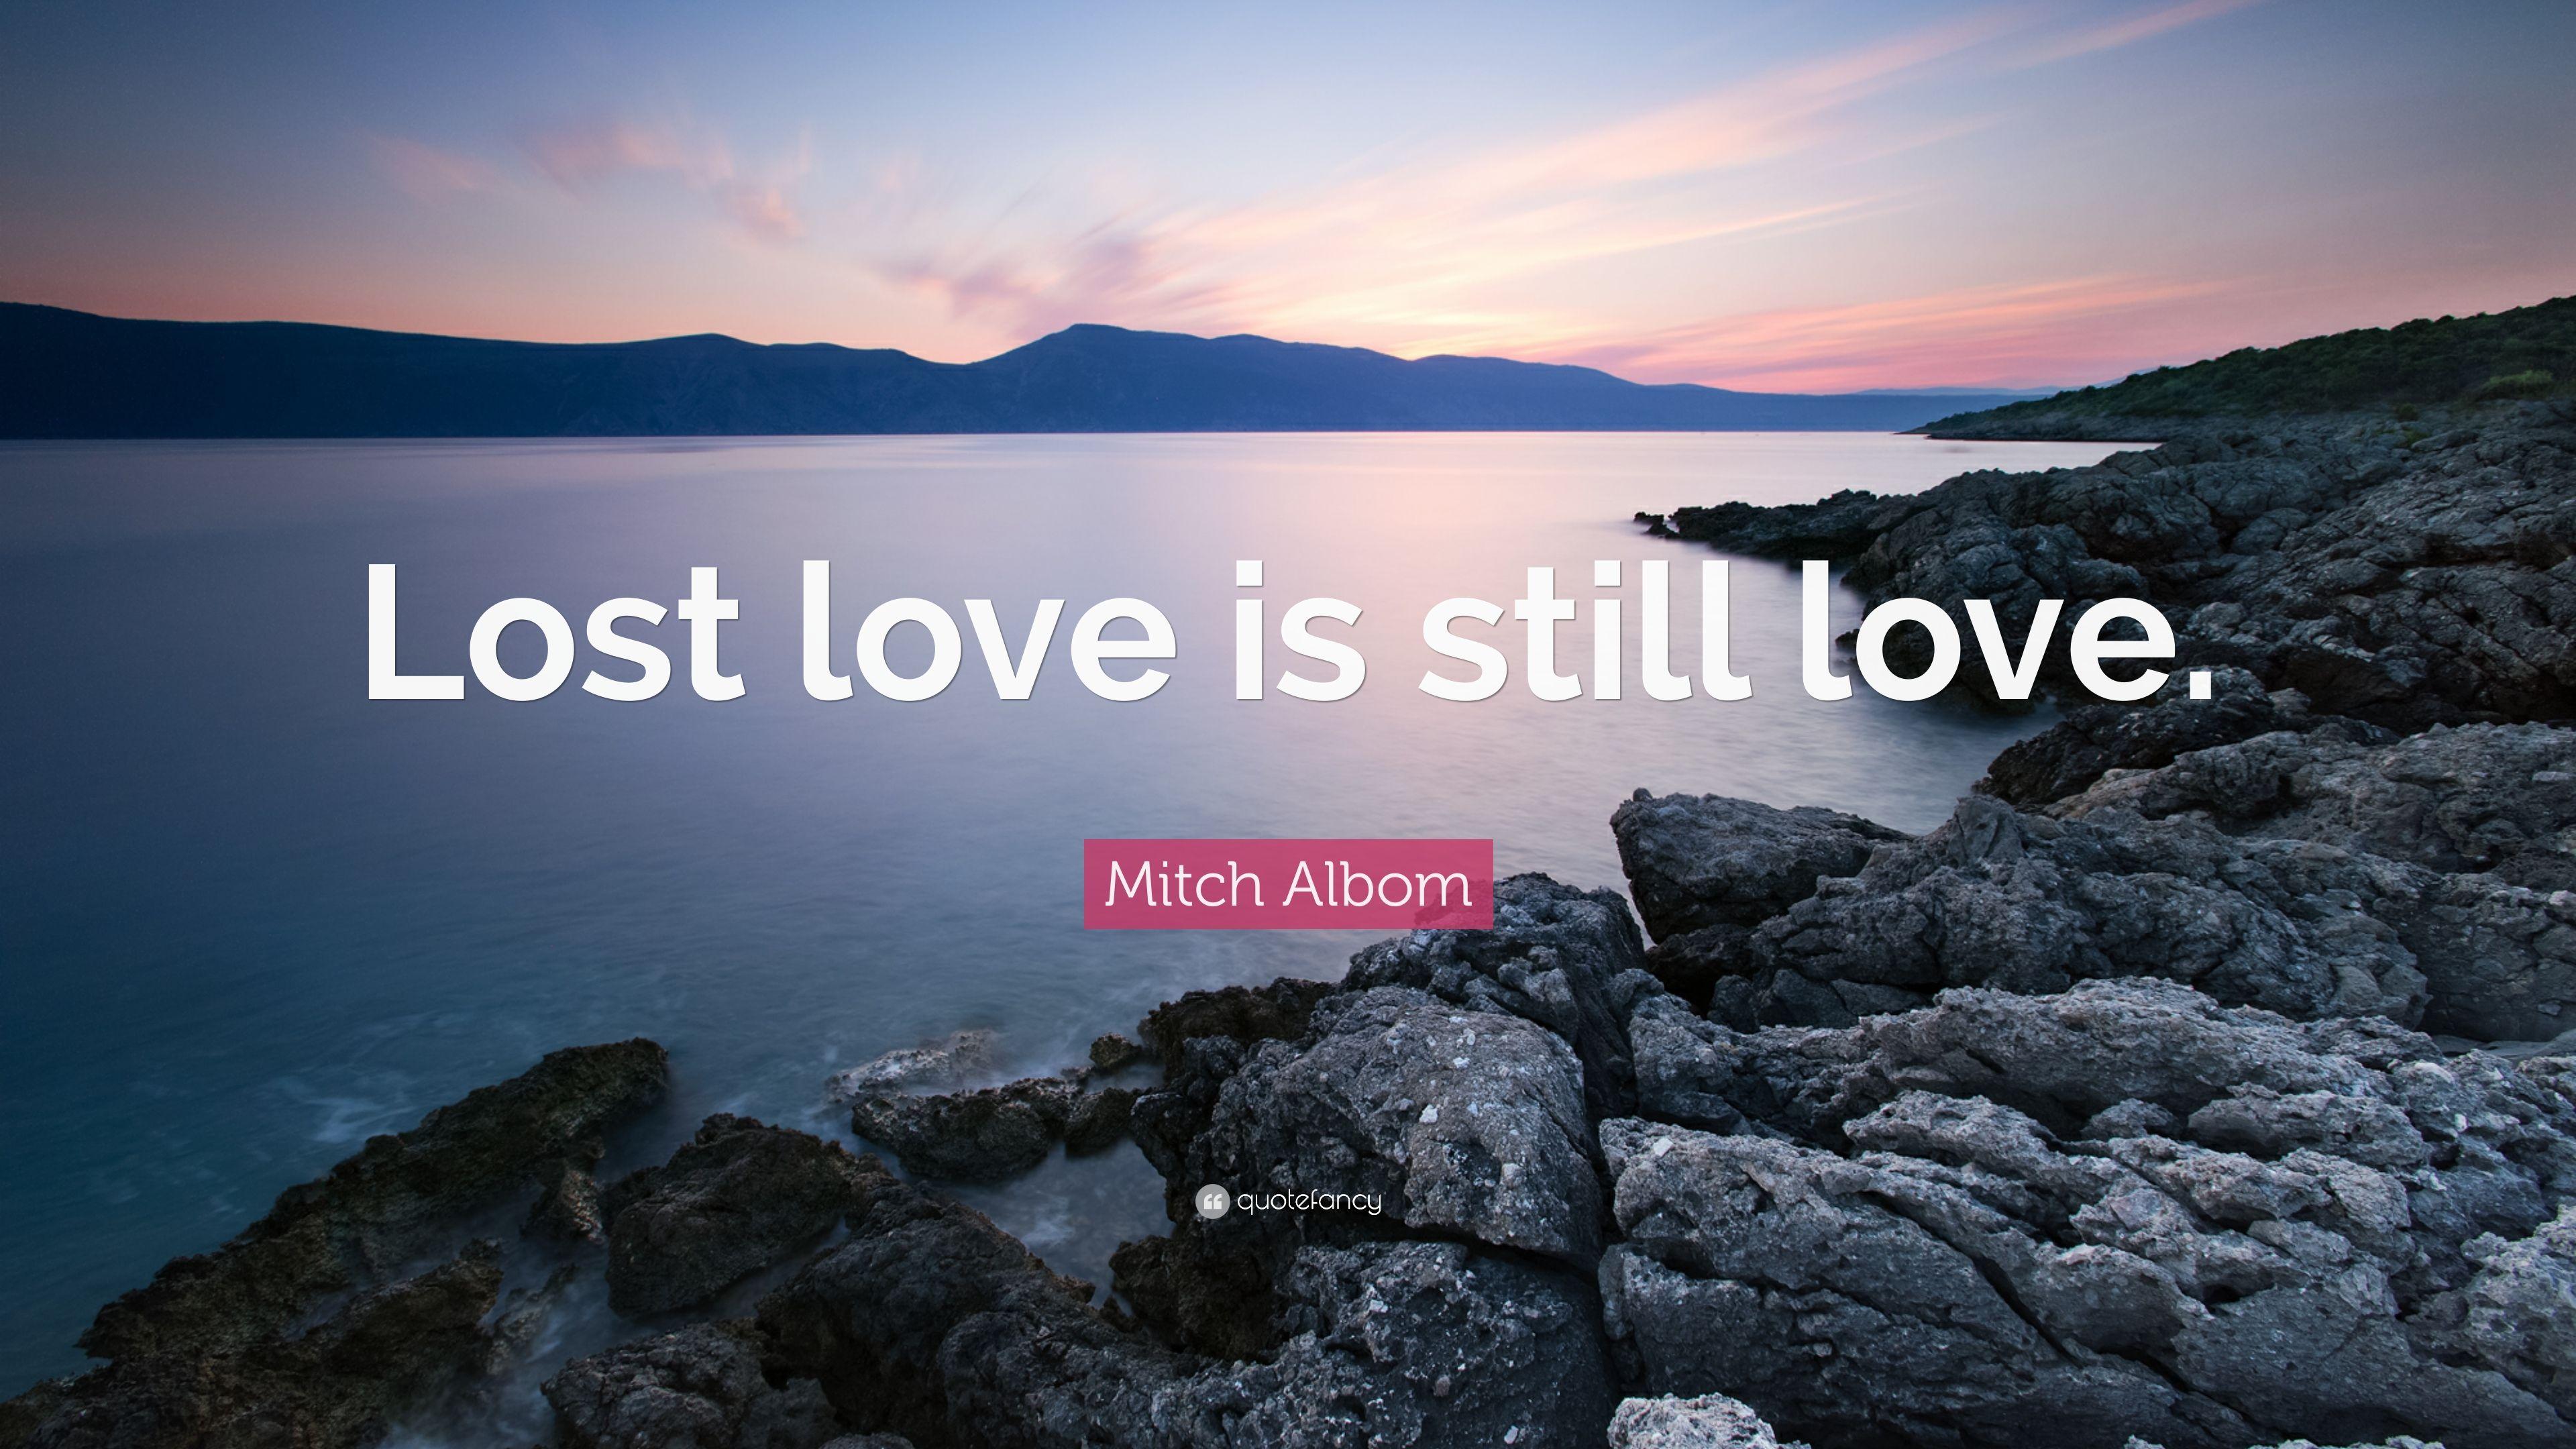 Mitch Albom Quote: “Lost love is still love.” 10 wallpaper